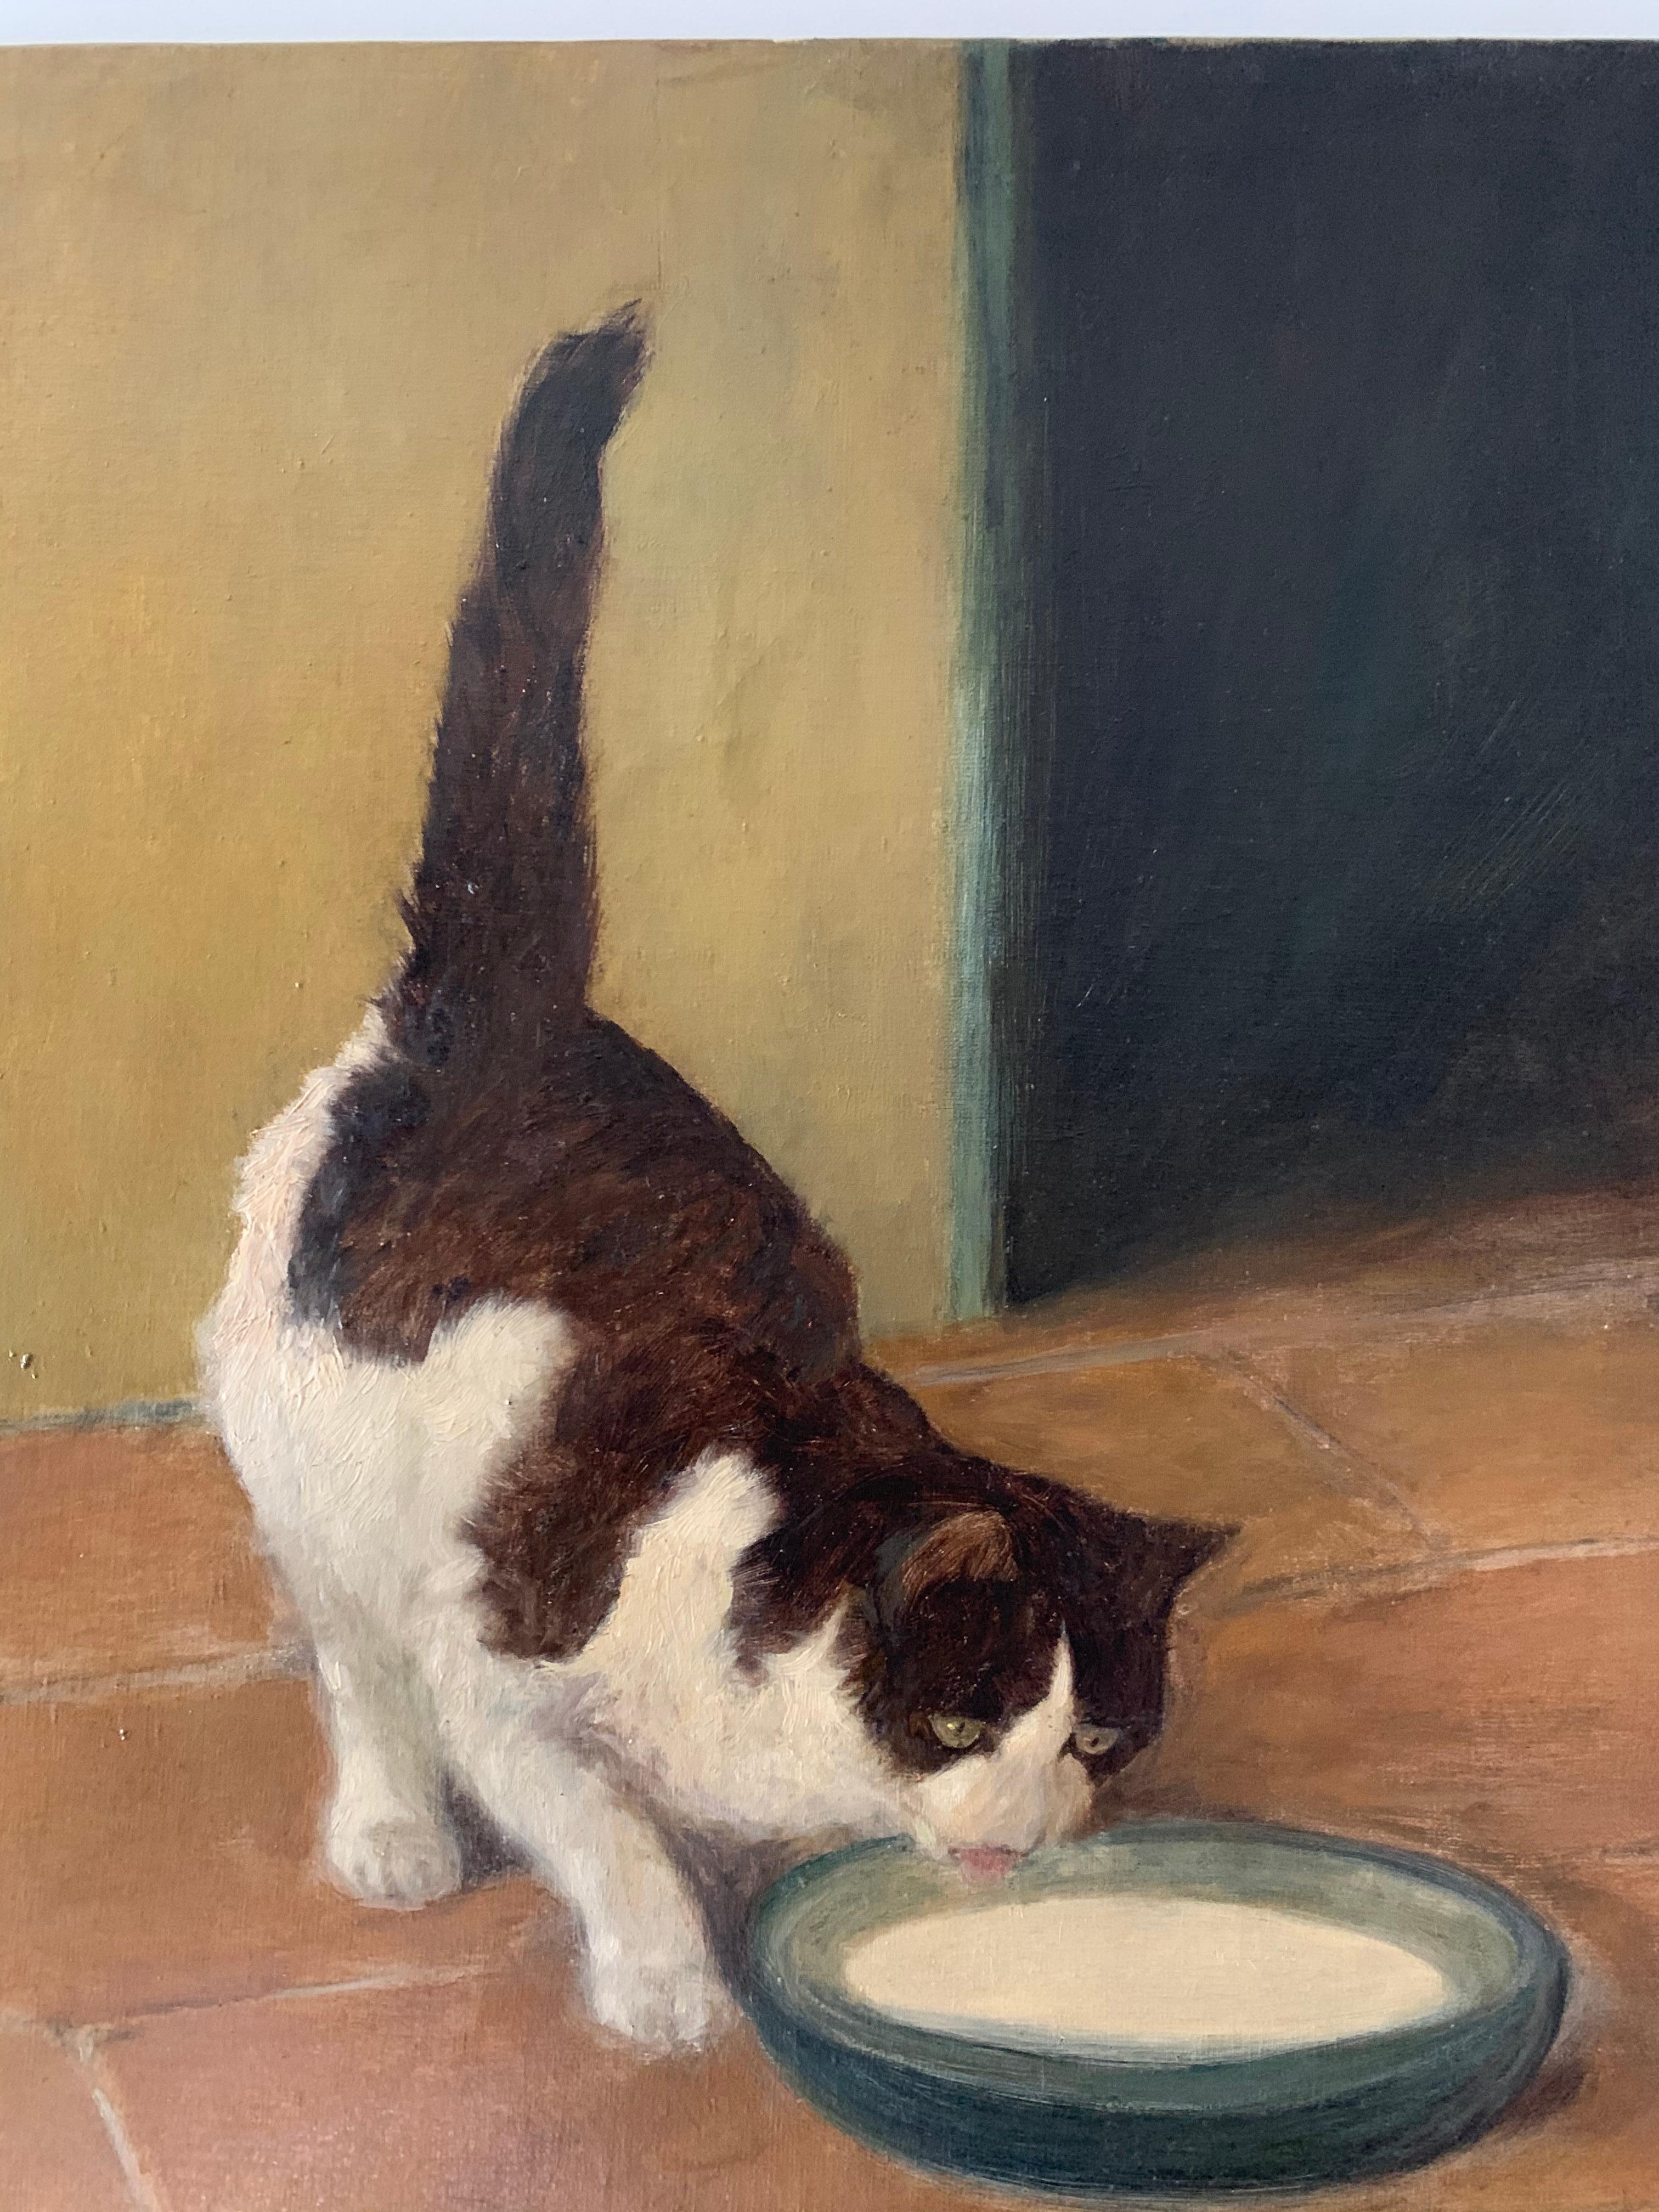 Un chat brun et blanc buvant du lait à partir d'un bol - Réalisme Painting par Arthur Heyer